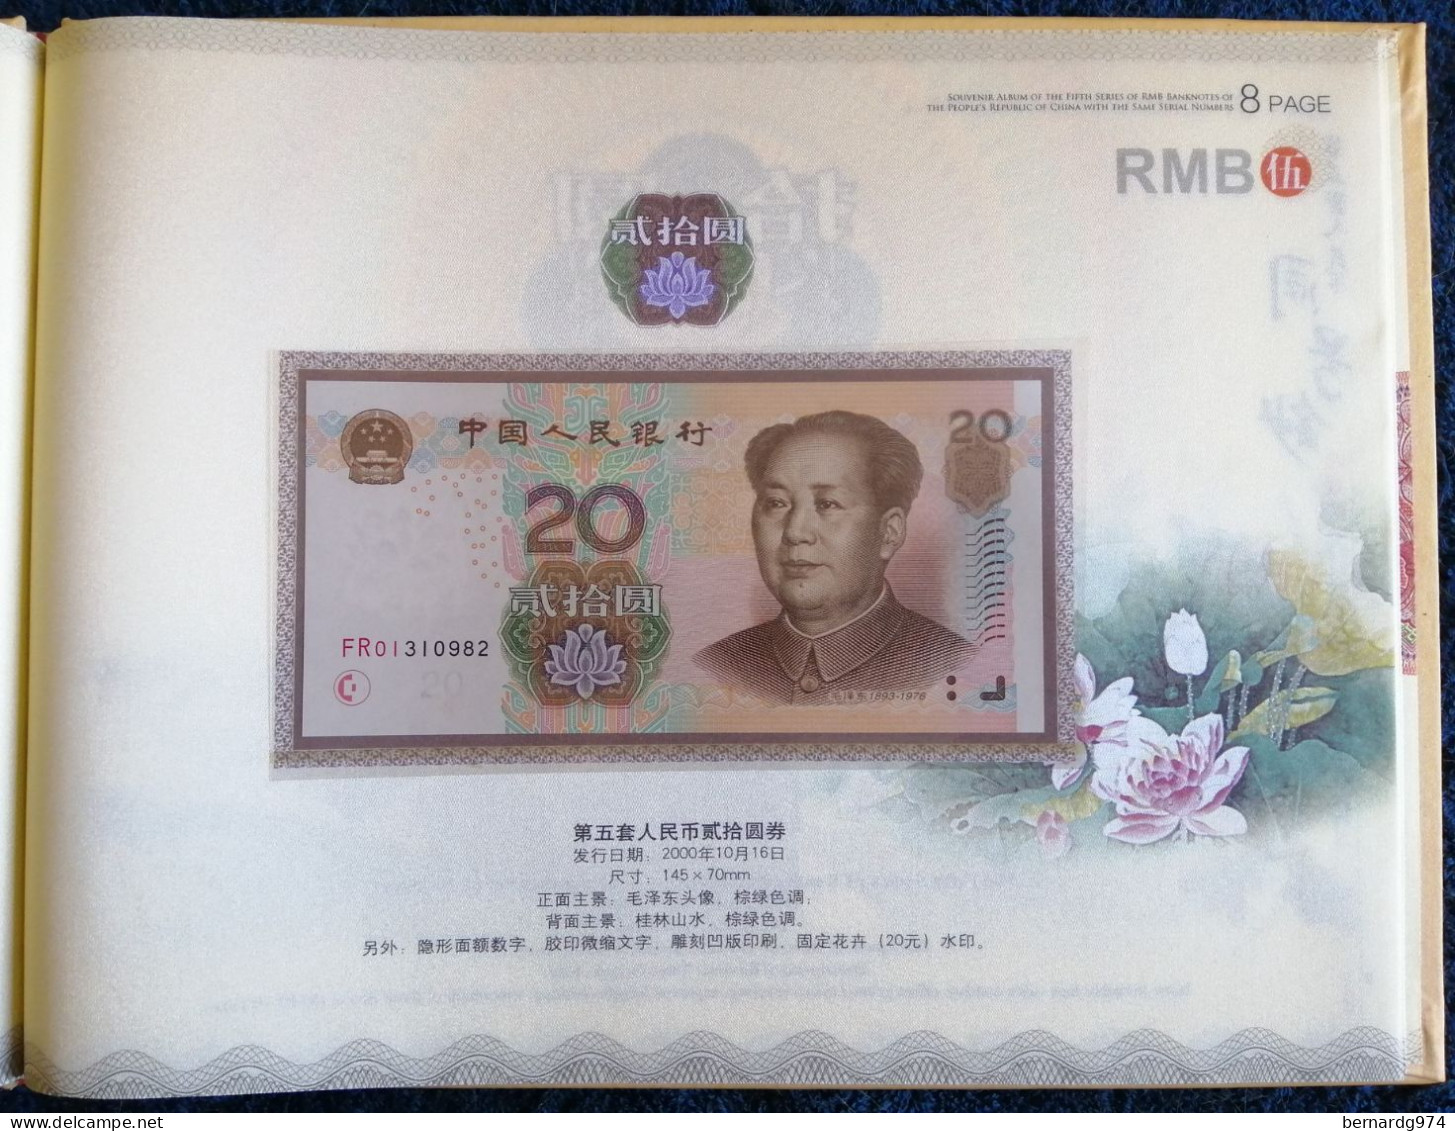 Chine : coffret à tirage limité présentant six billets de banque